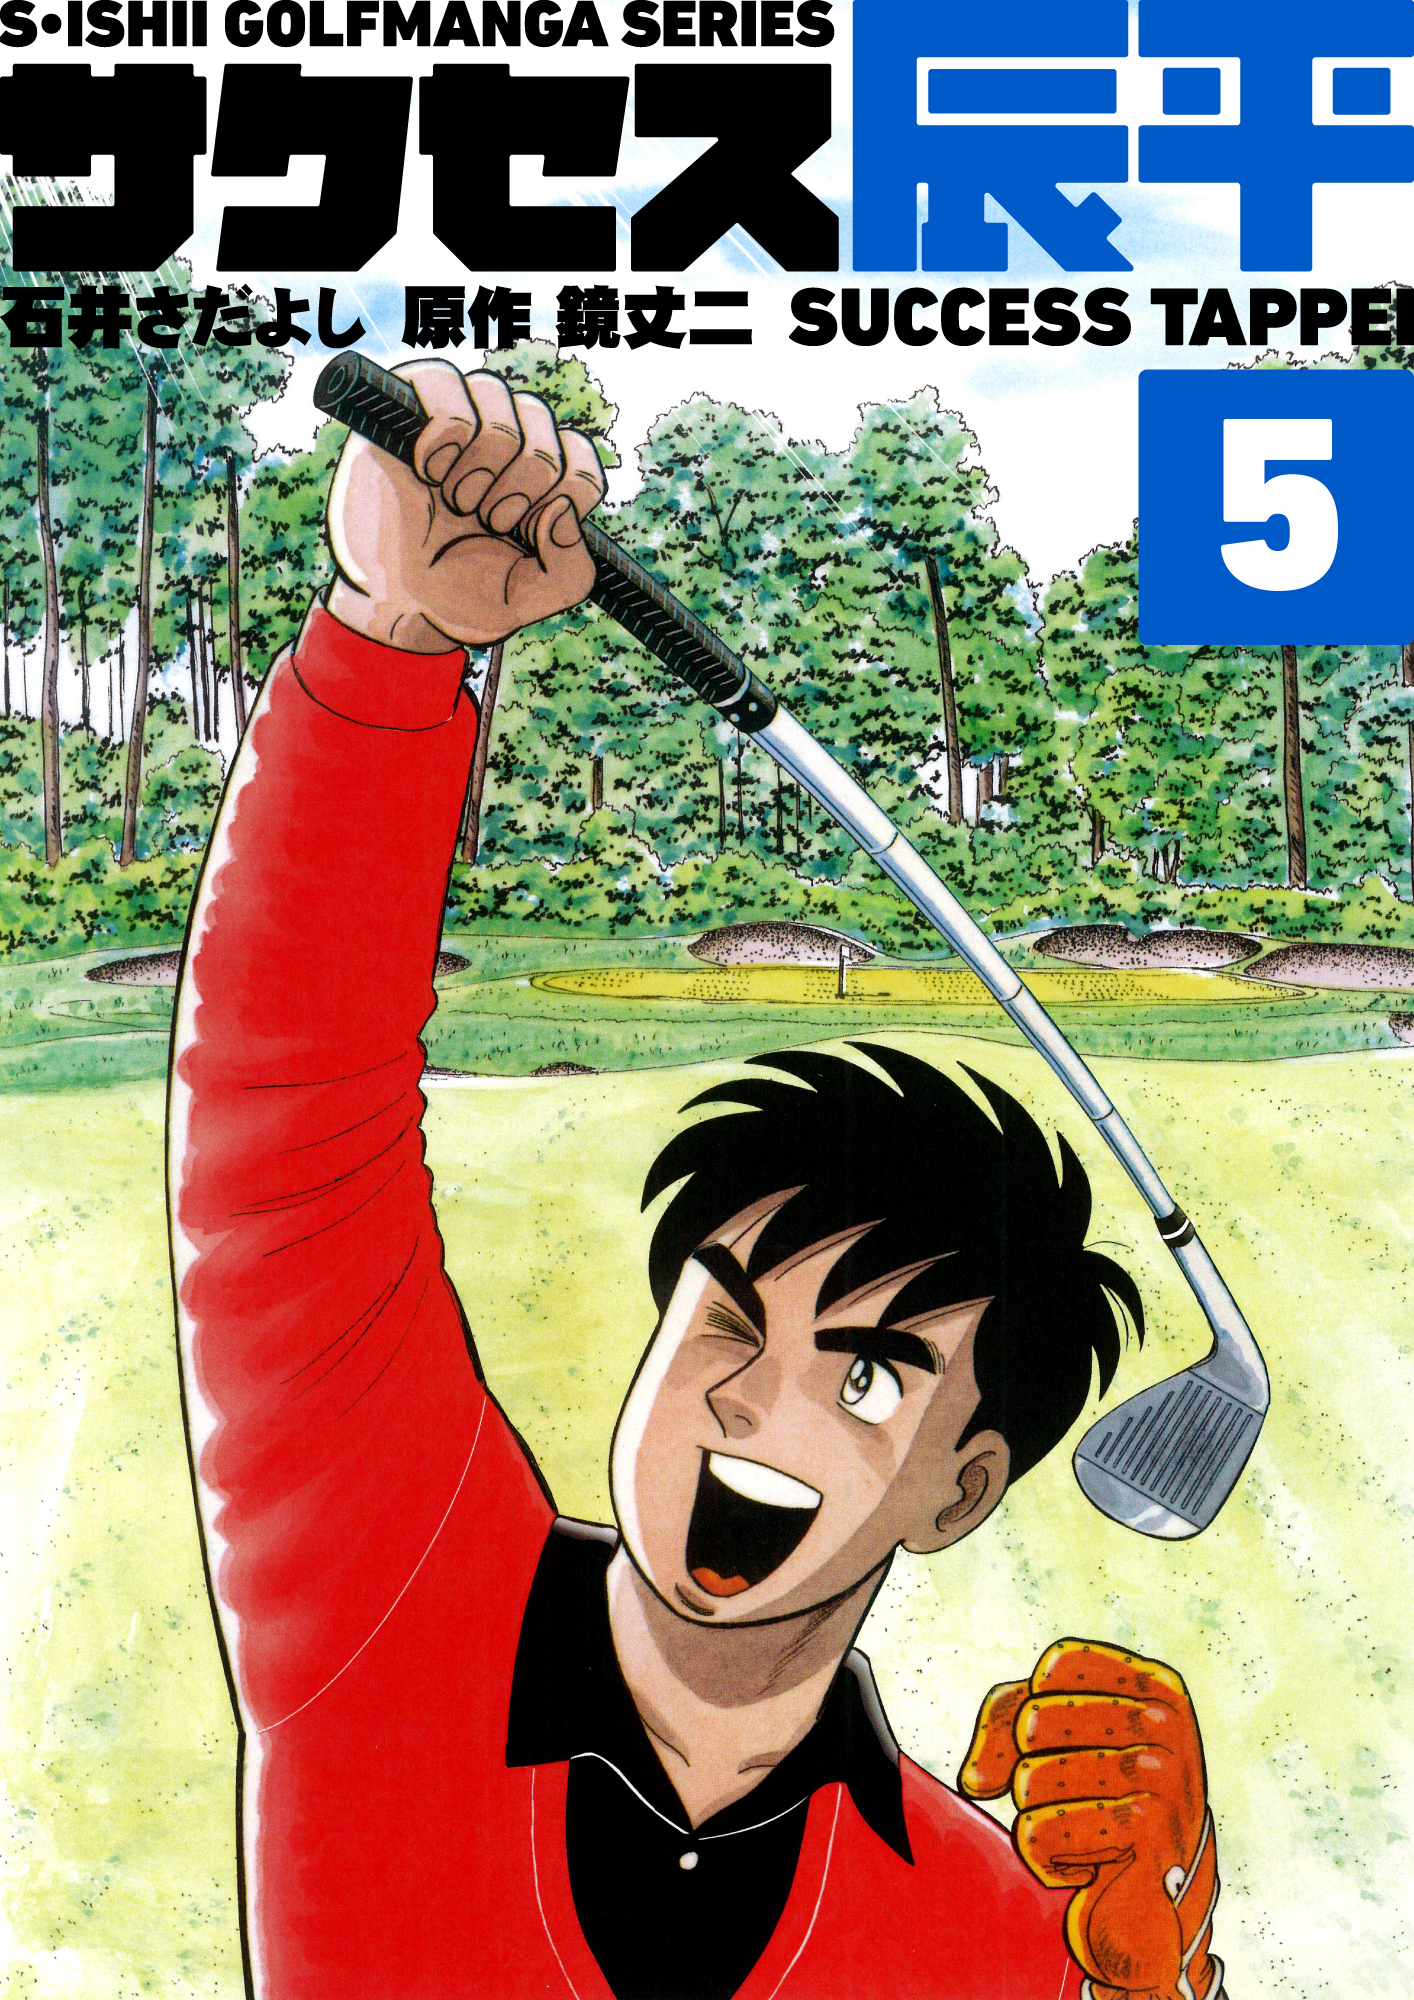 石井さだよしゴルフ漫画シリーズ サクセス辰平 5巻 無料 試し読みなら Amebaマンガ 旧 読書のお時間です